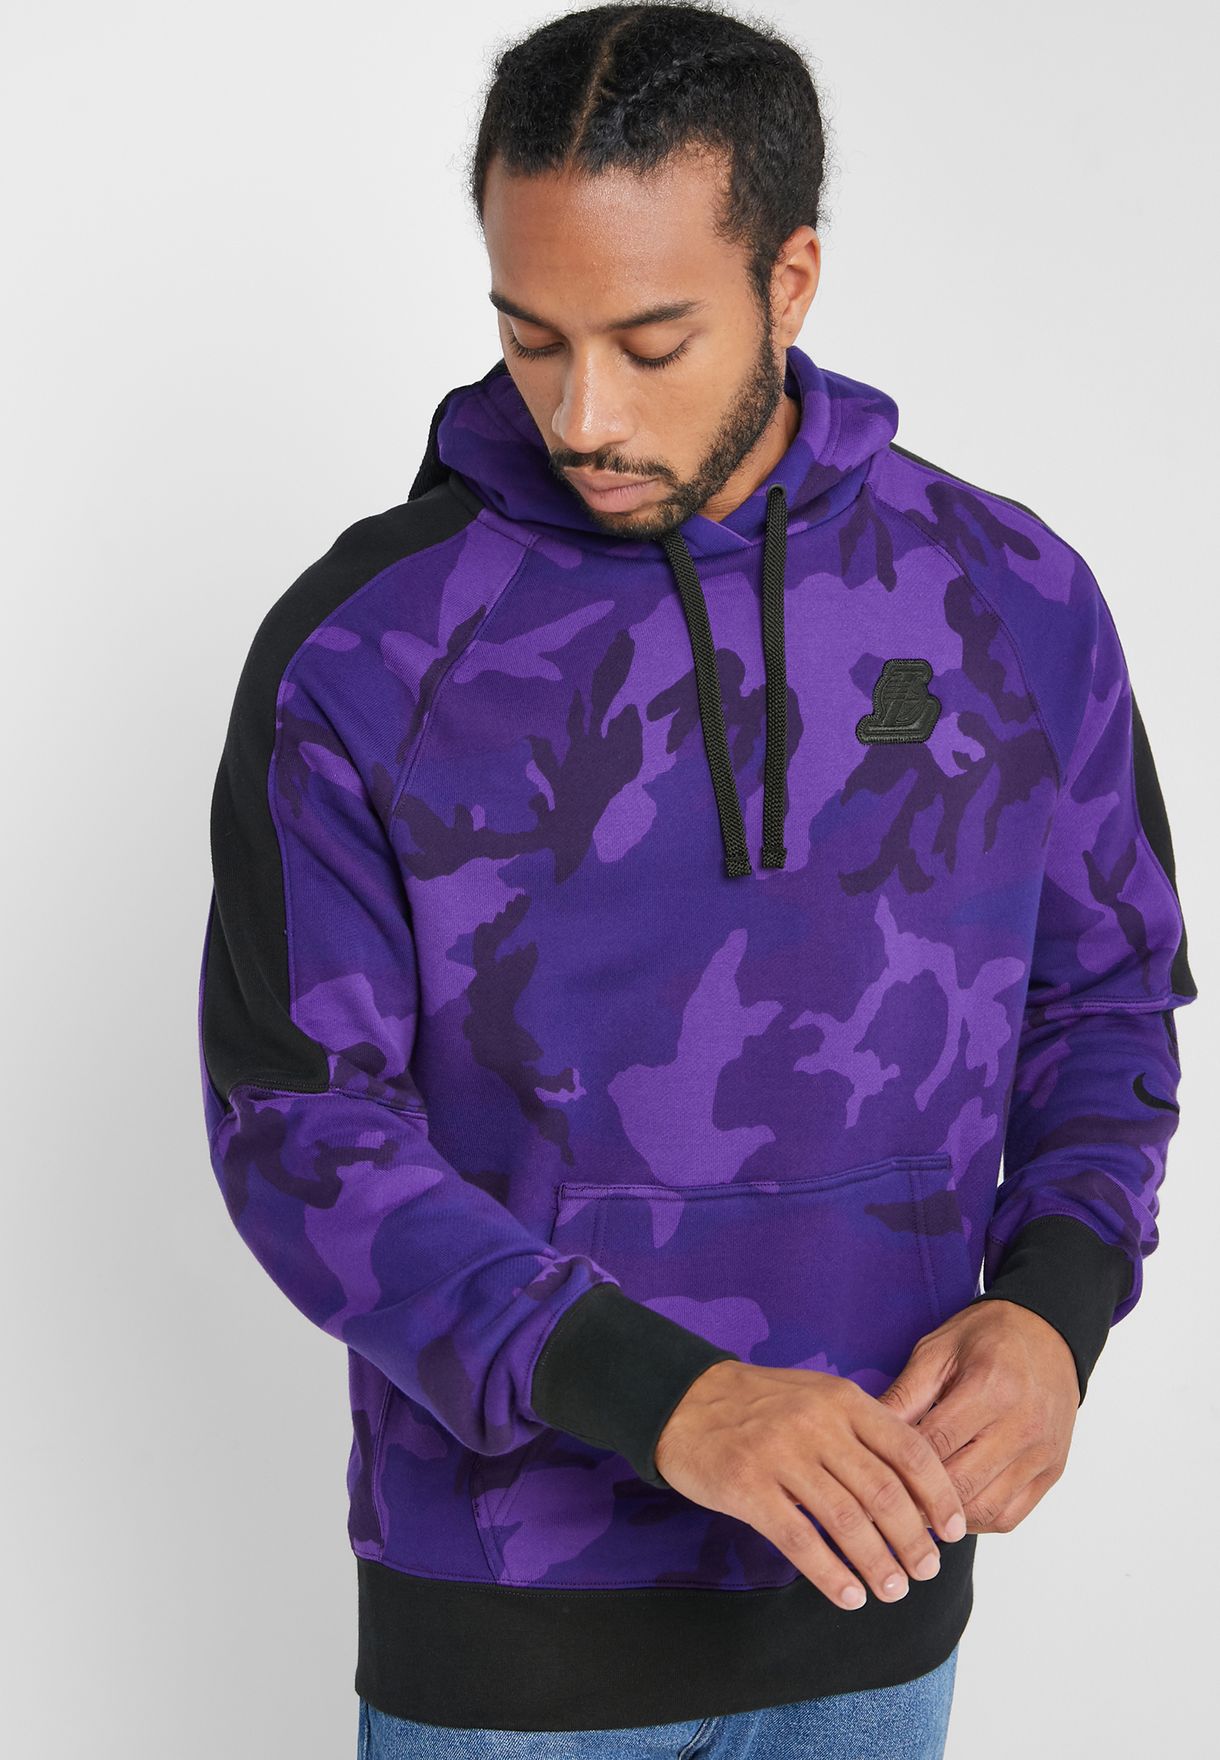 purple lakers hoodie nike